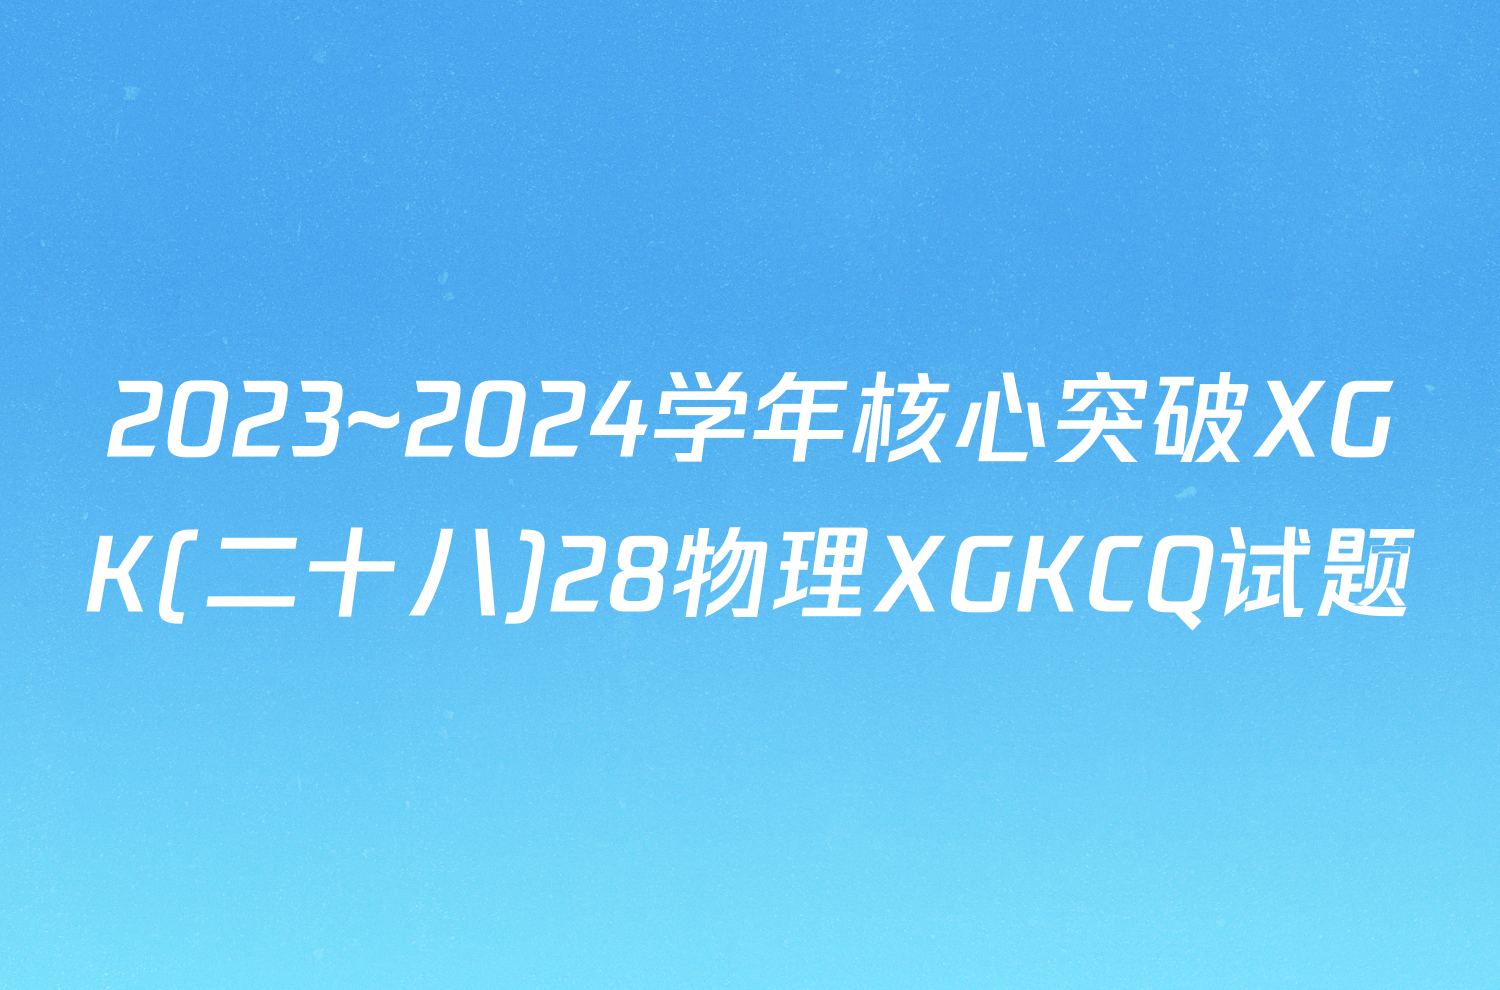 2023~2024学年核心突破XGK(二十八)28物理XGKCQ试题